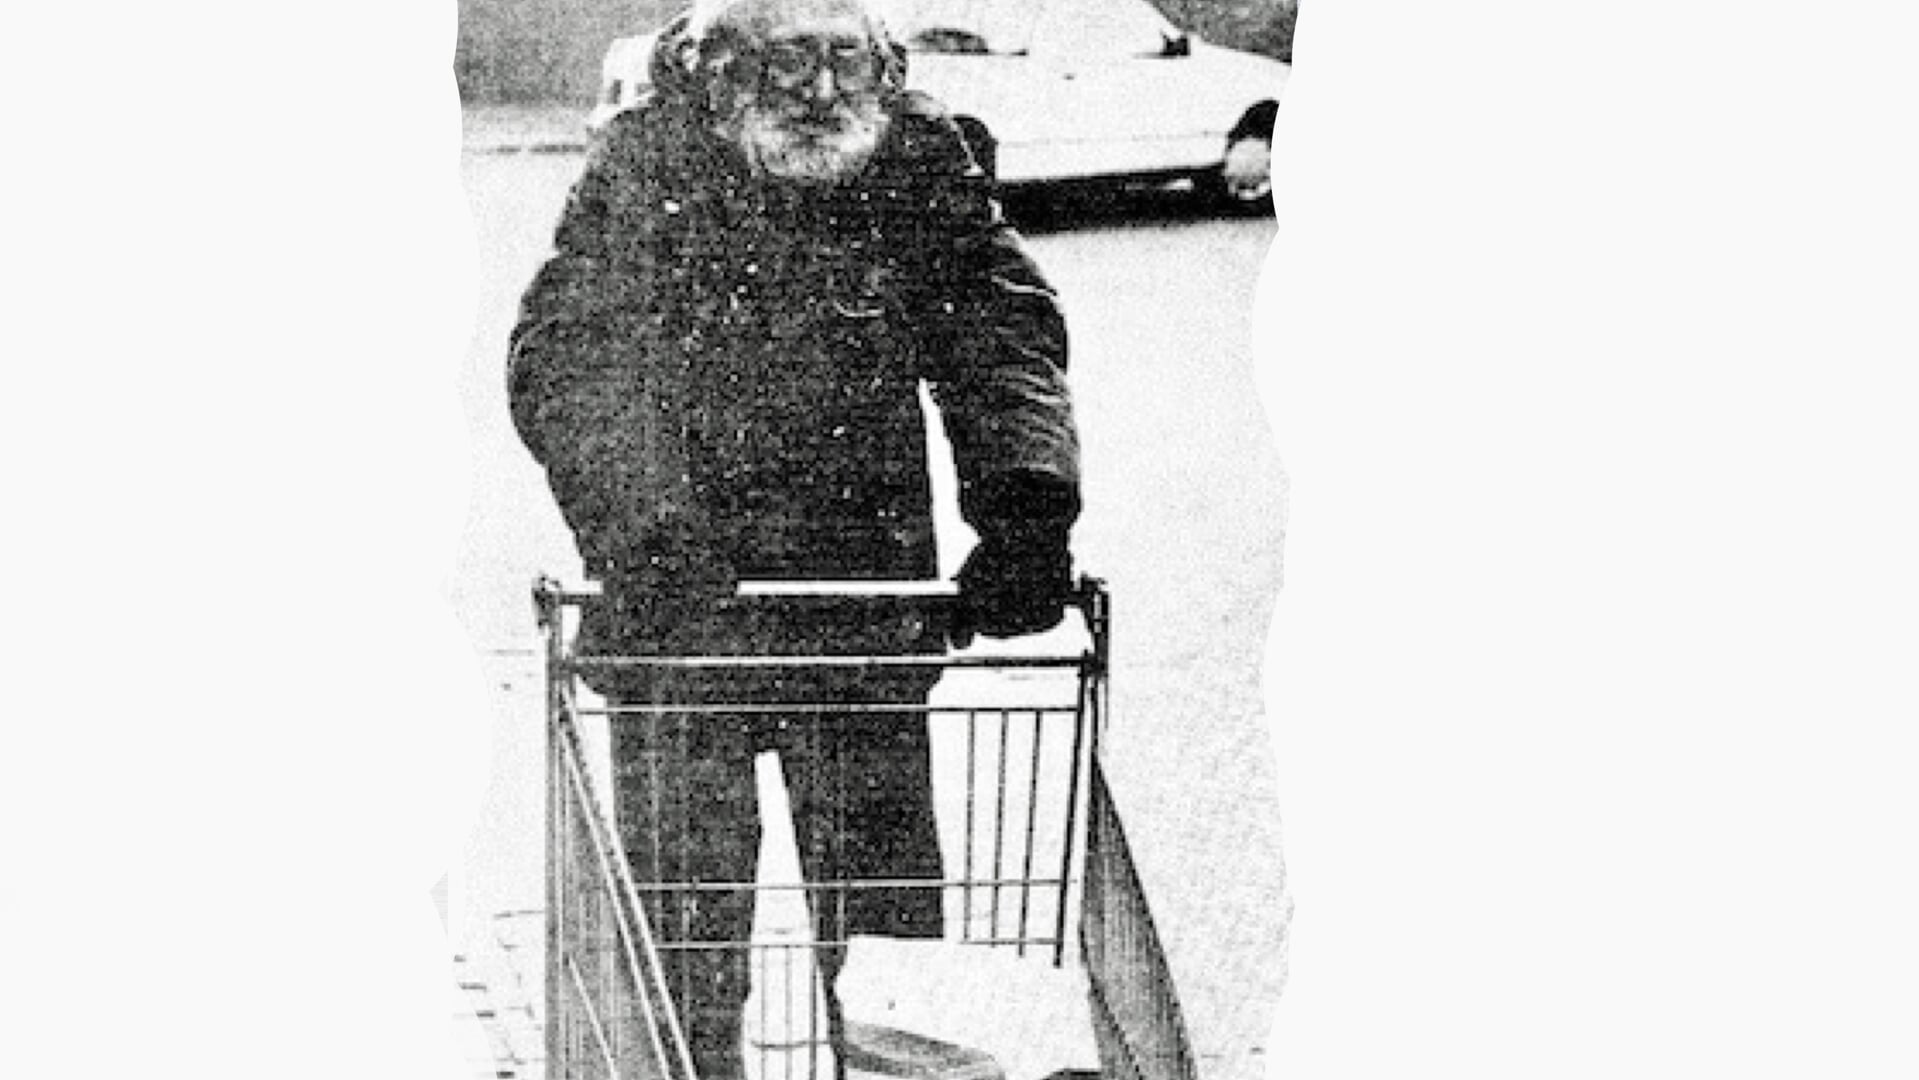 Jopie met zijn onafscheidelijke winkelwagentje van supermarkt Miro. Foto afgedrukt in alternatieve Zutphense krant Zet.